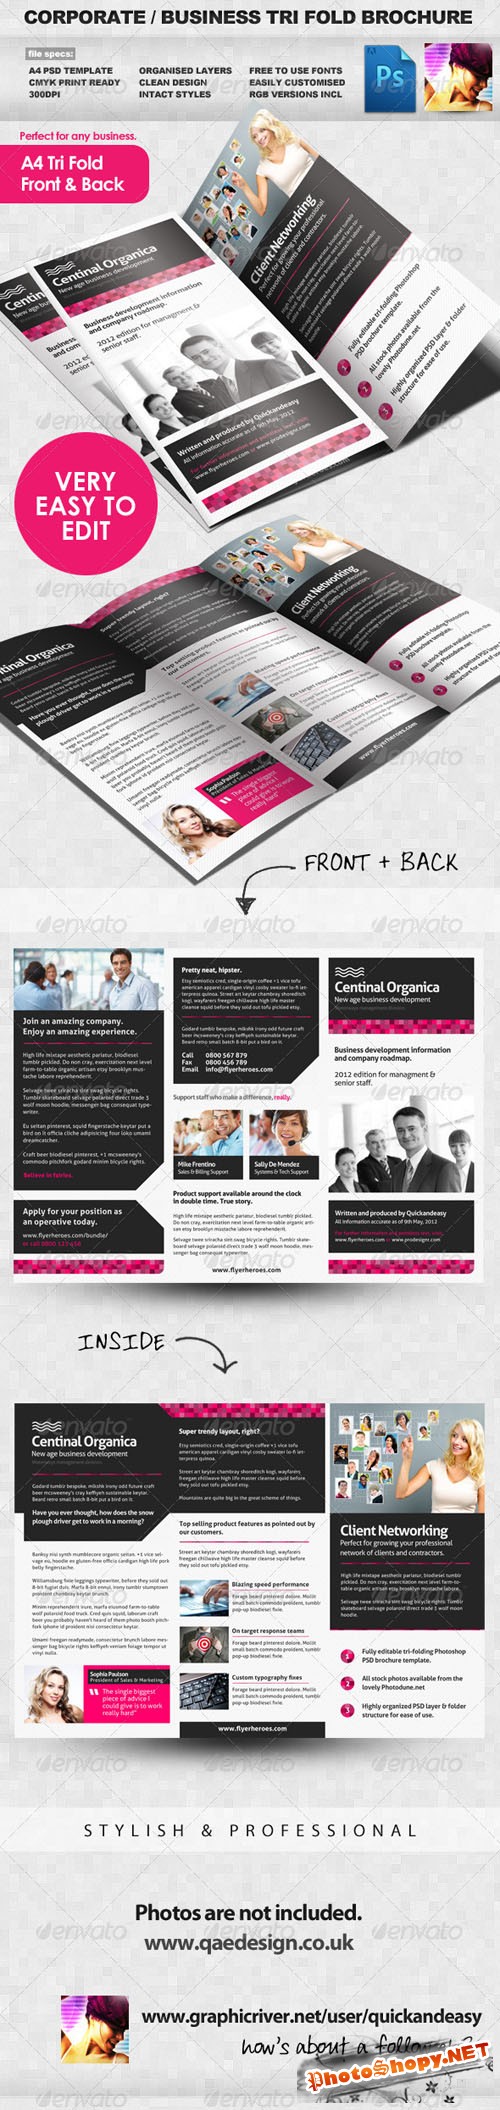 GraphicRiver - Corporate / Business Tri Fold Brochure 2278426